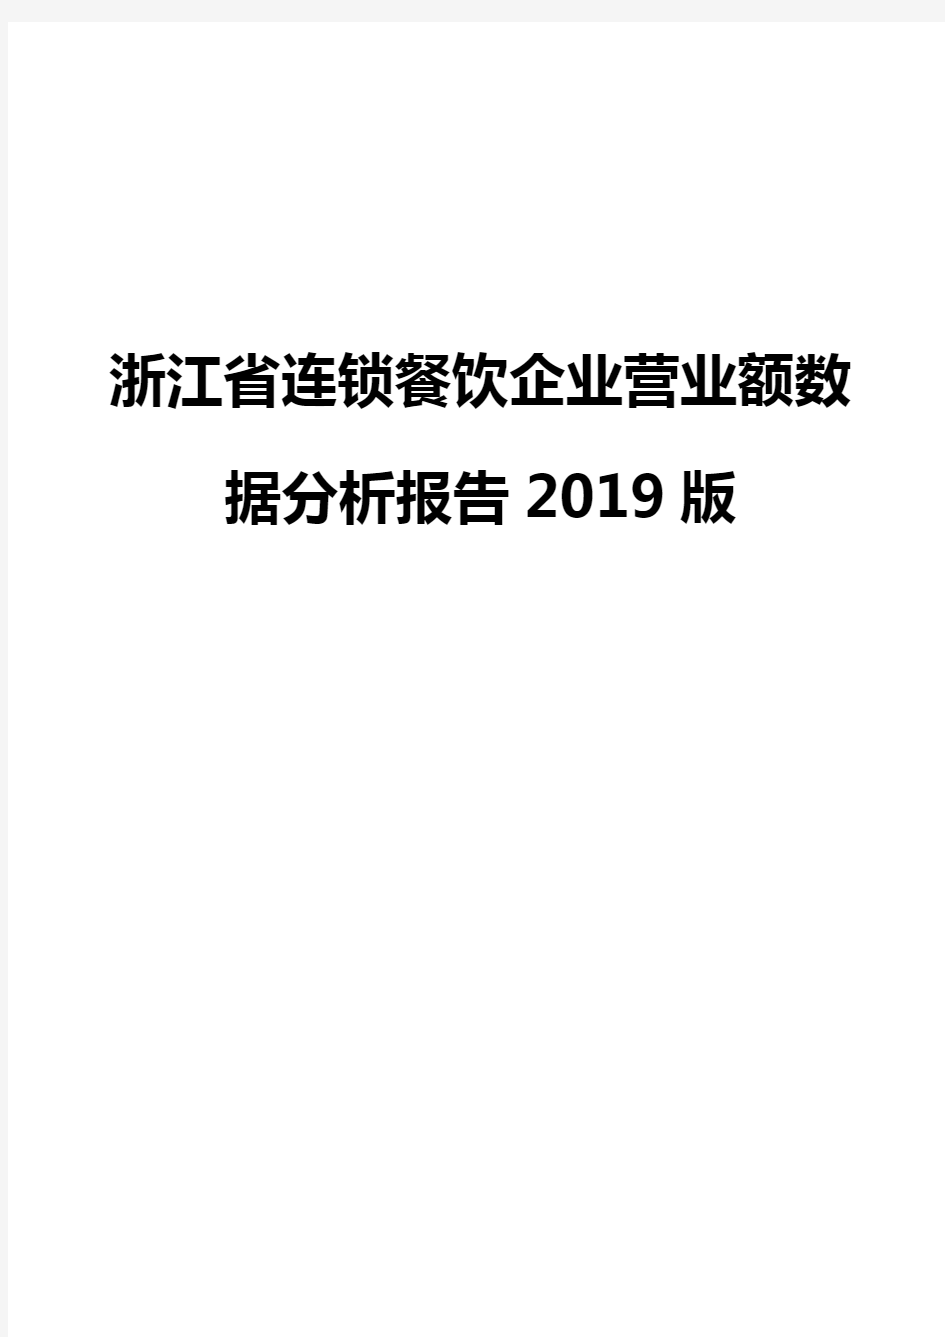 浙江省连锁餐饮企业营业额数据分析报告2019版